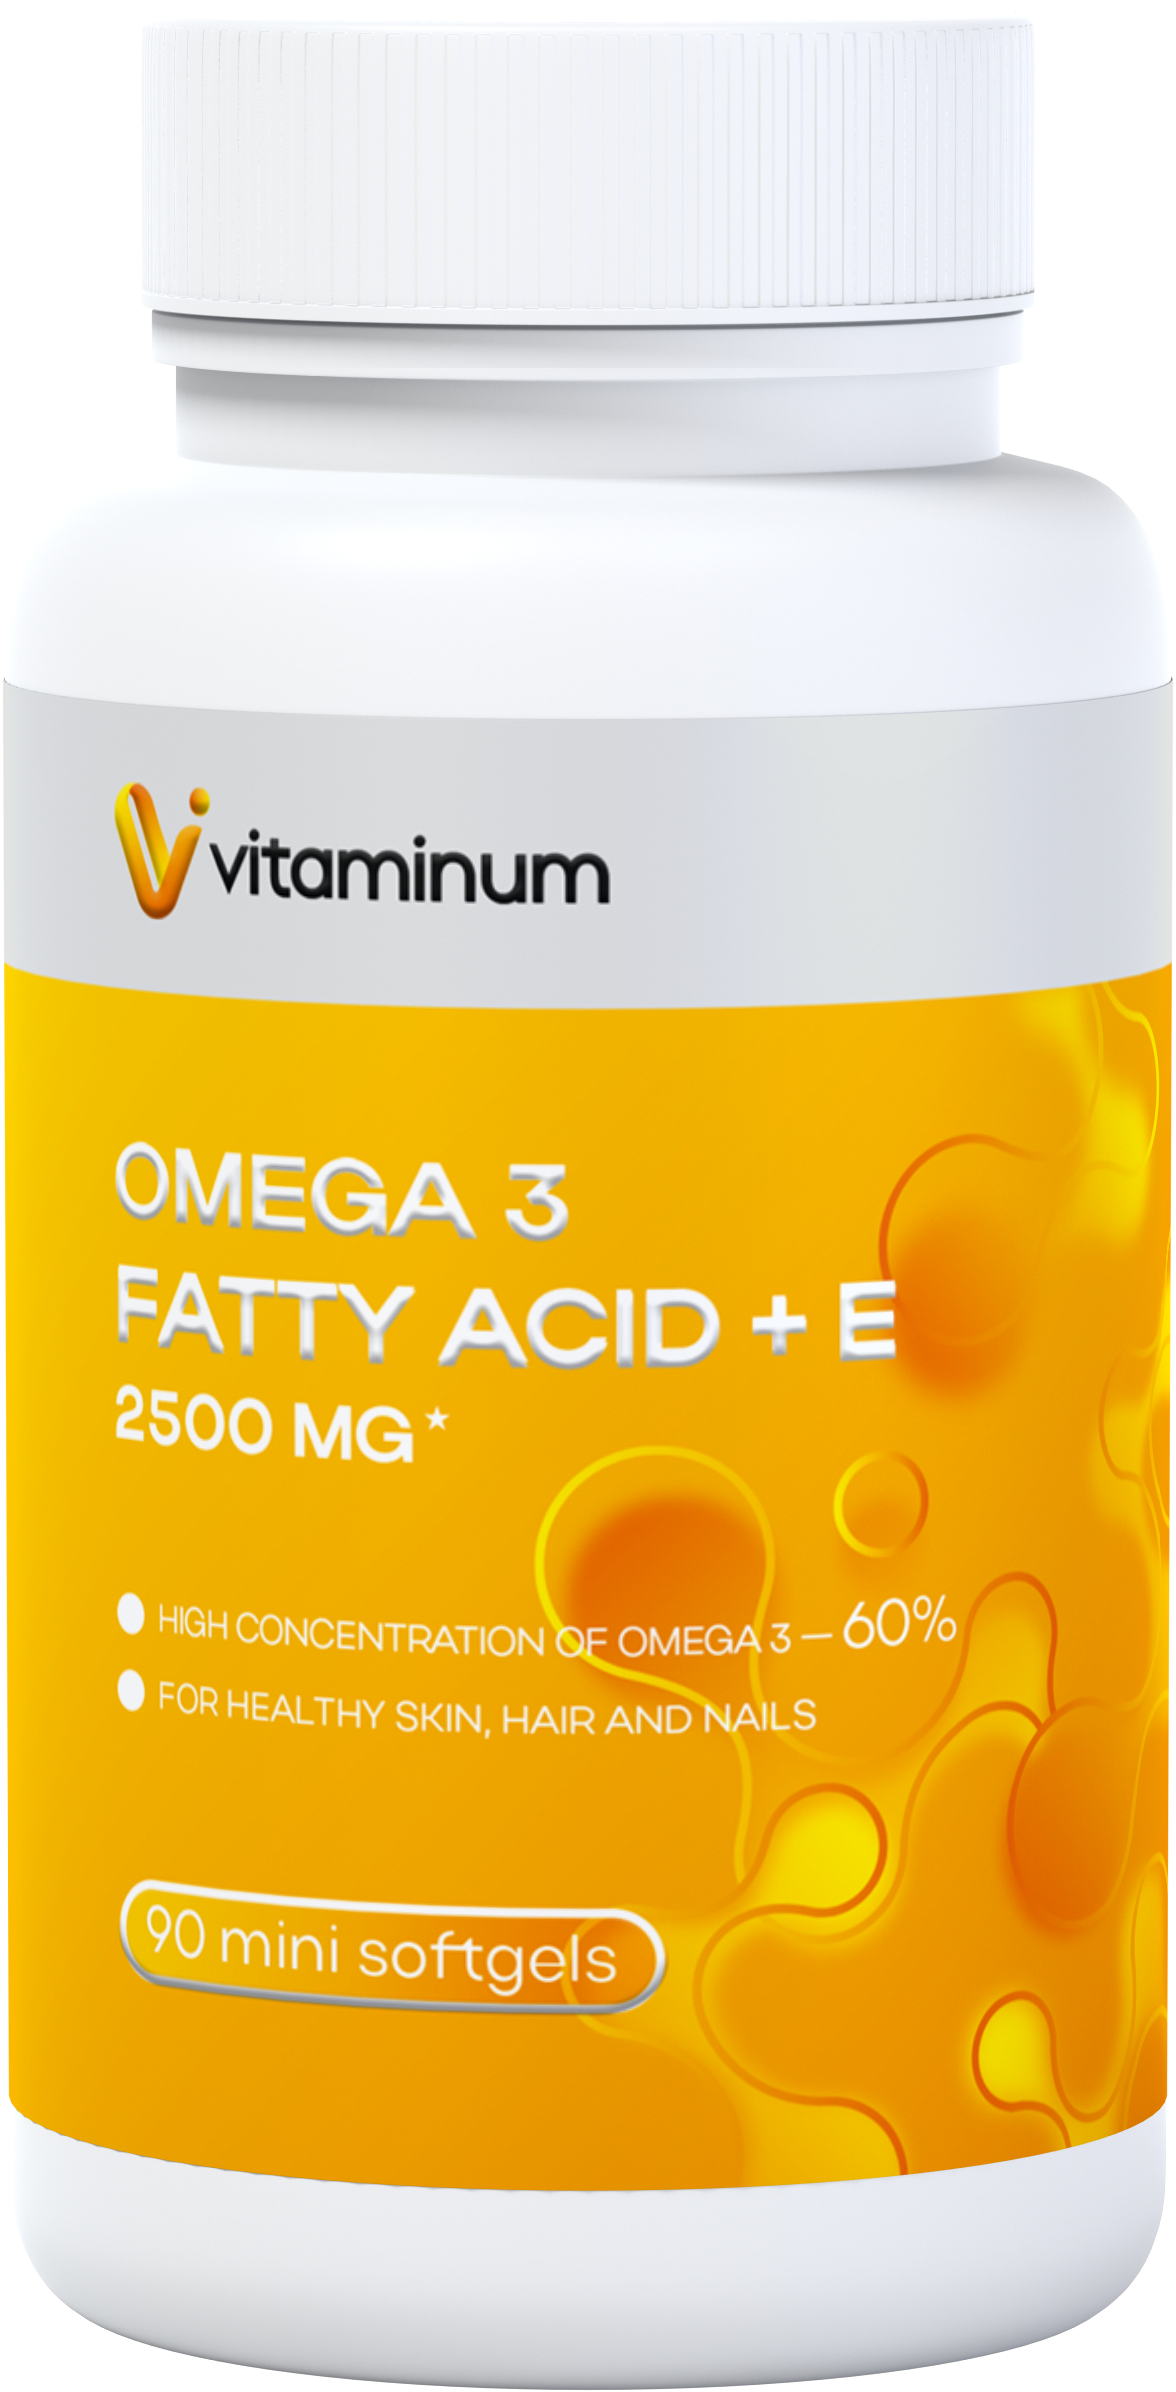  Vitaminum ОМЕГА 3 60% + витамин Е (2500 MG*) 90 капсул 700 мг   в Краснодаре